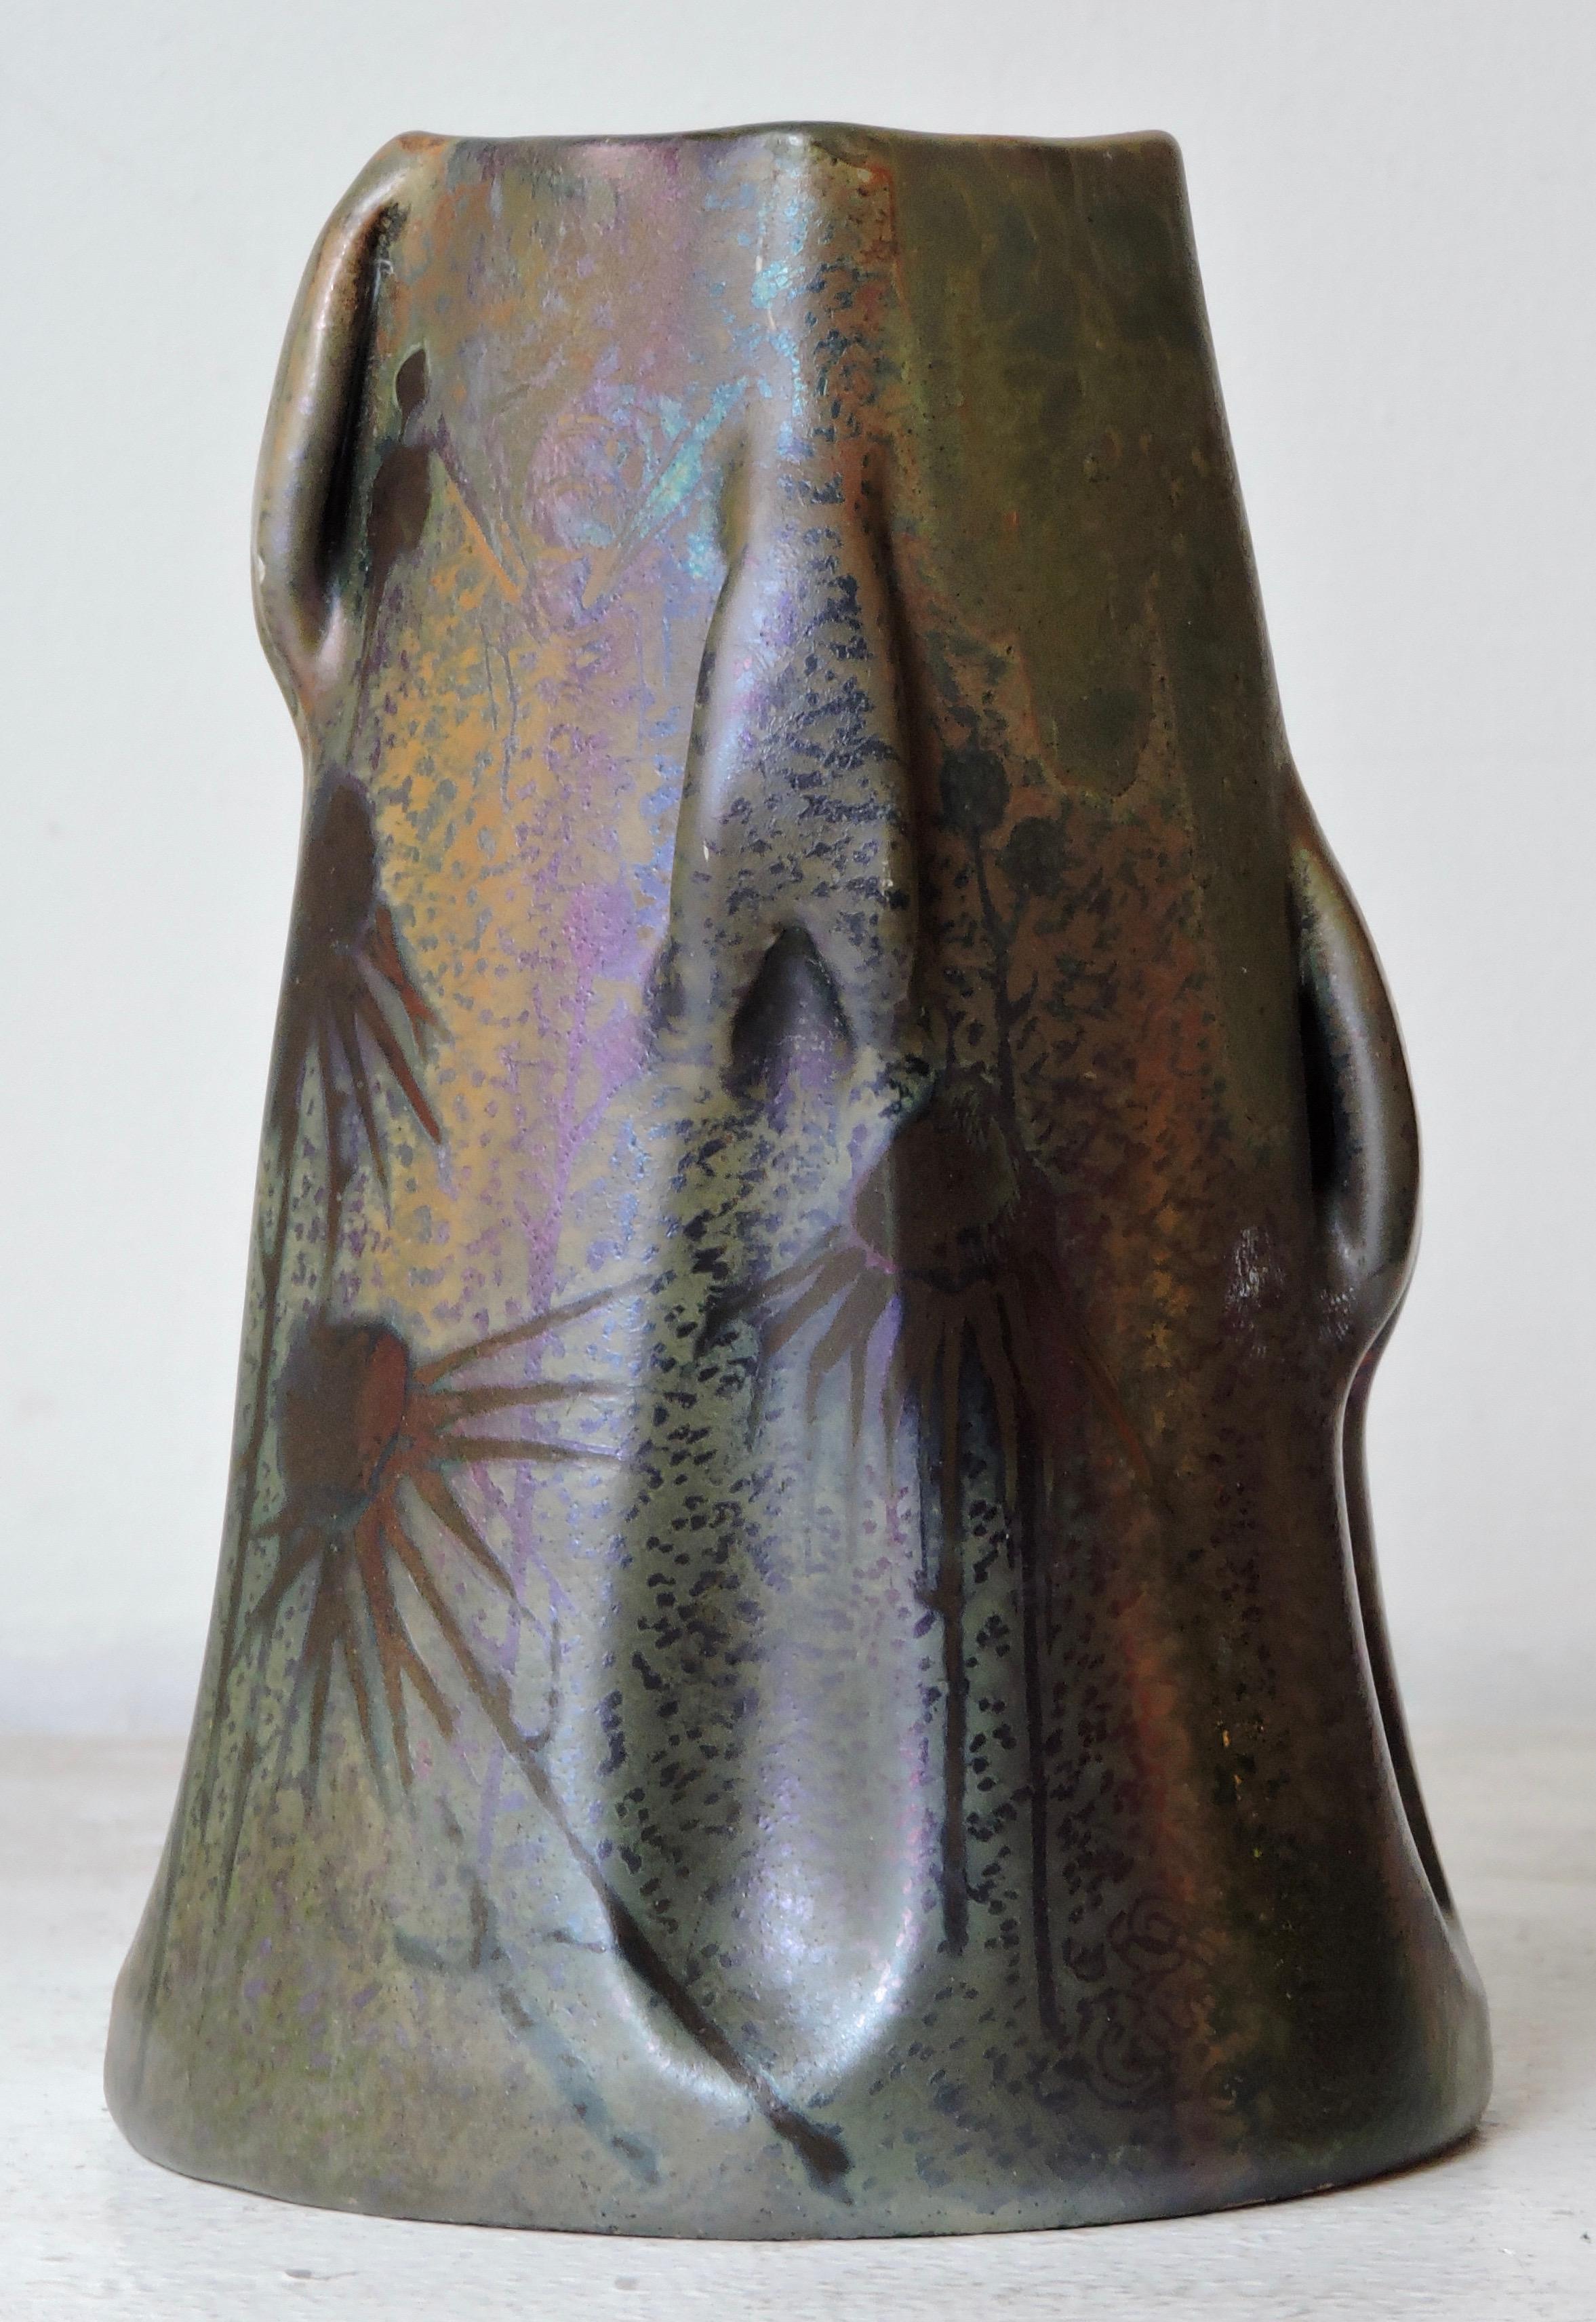 Japonisme Art Nouveau Iridescent Glazed Earthenware Vase by Clément Massier, circa 1900